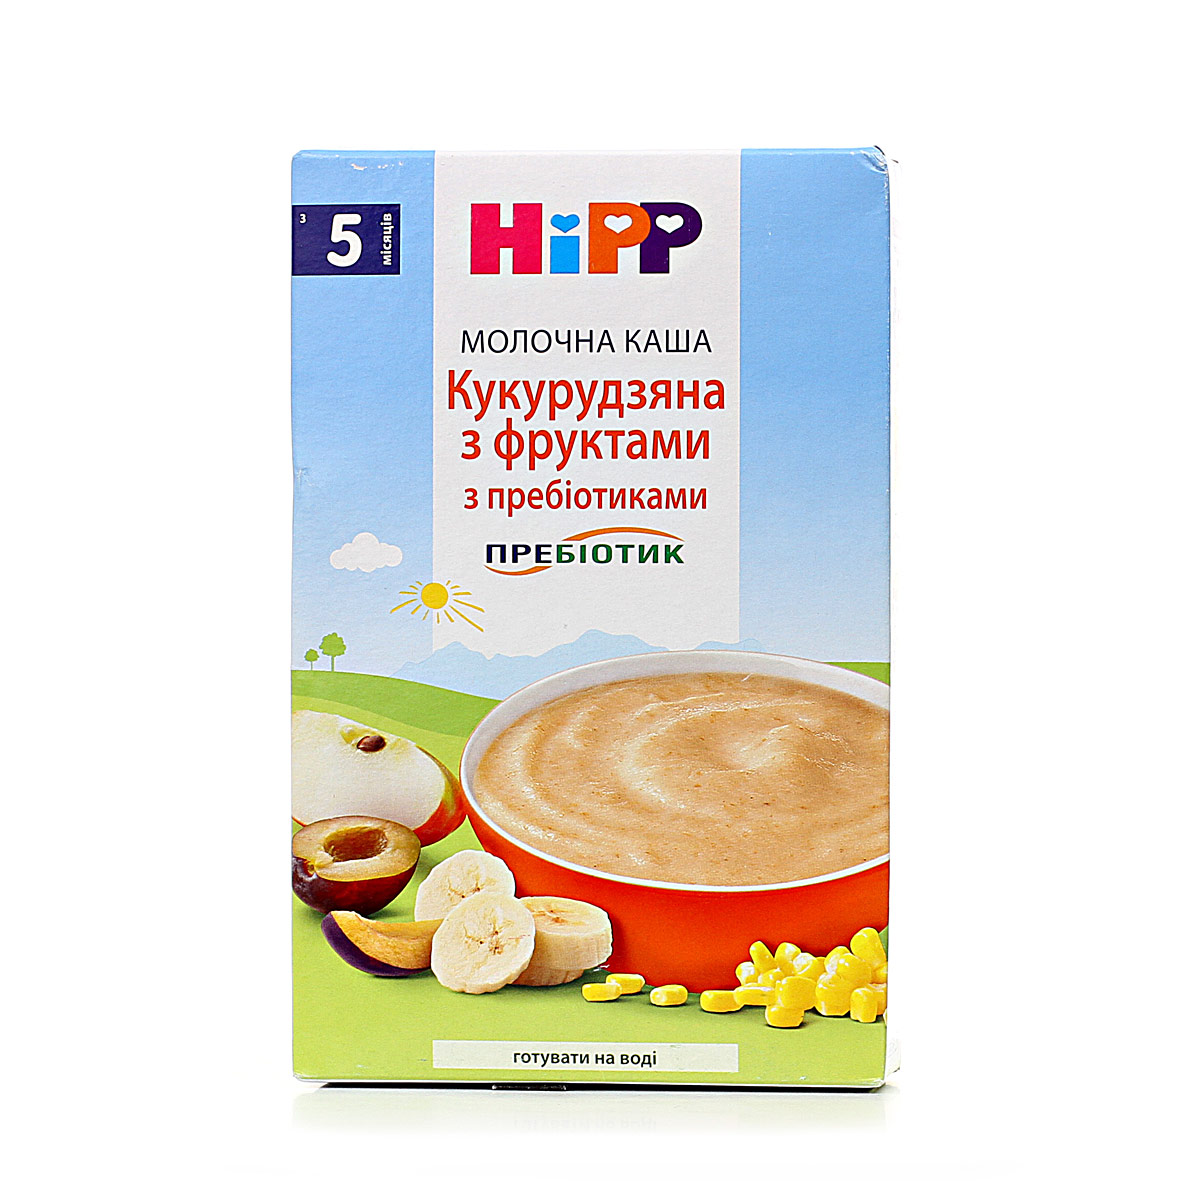 Молочная каша "Кукурузная с фруктами" с пребиотиками - фото 7 | Интернет-магазин Shop HiPP